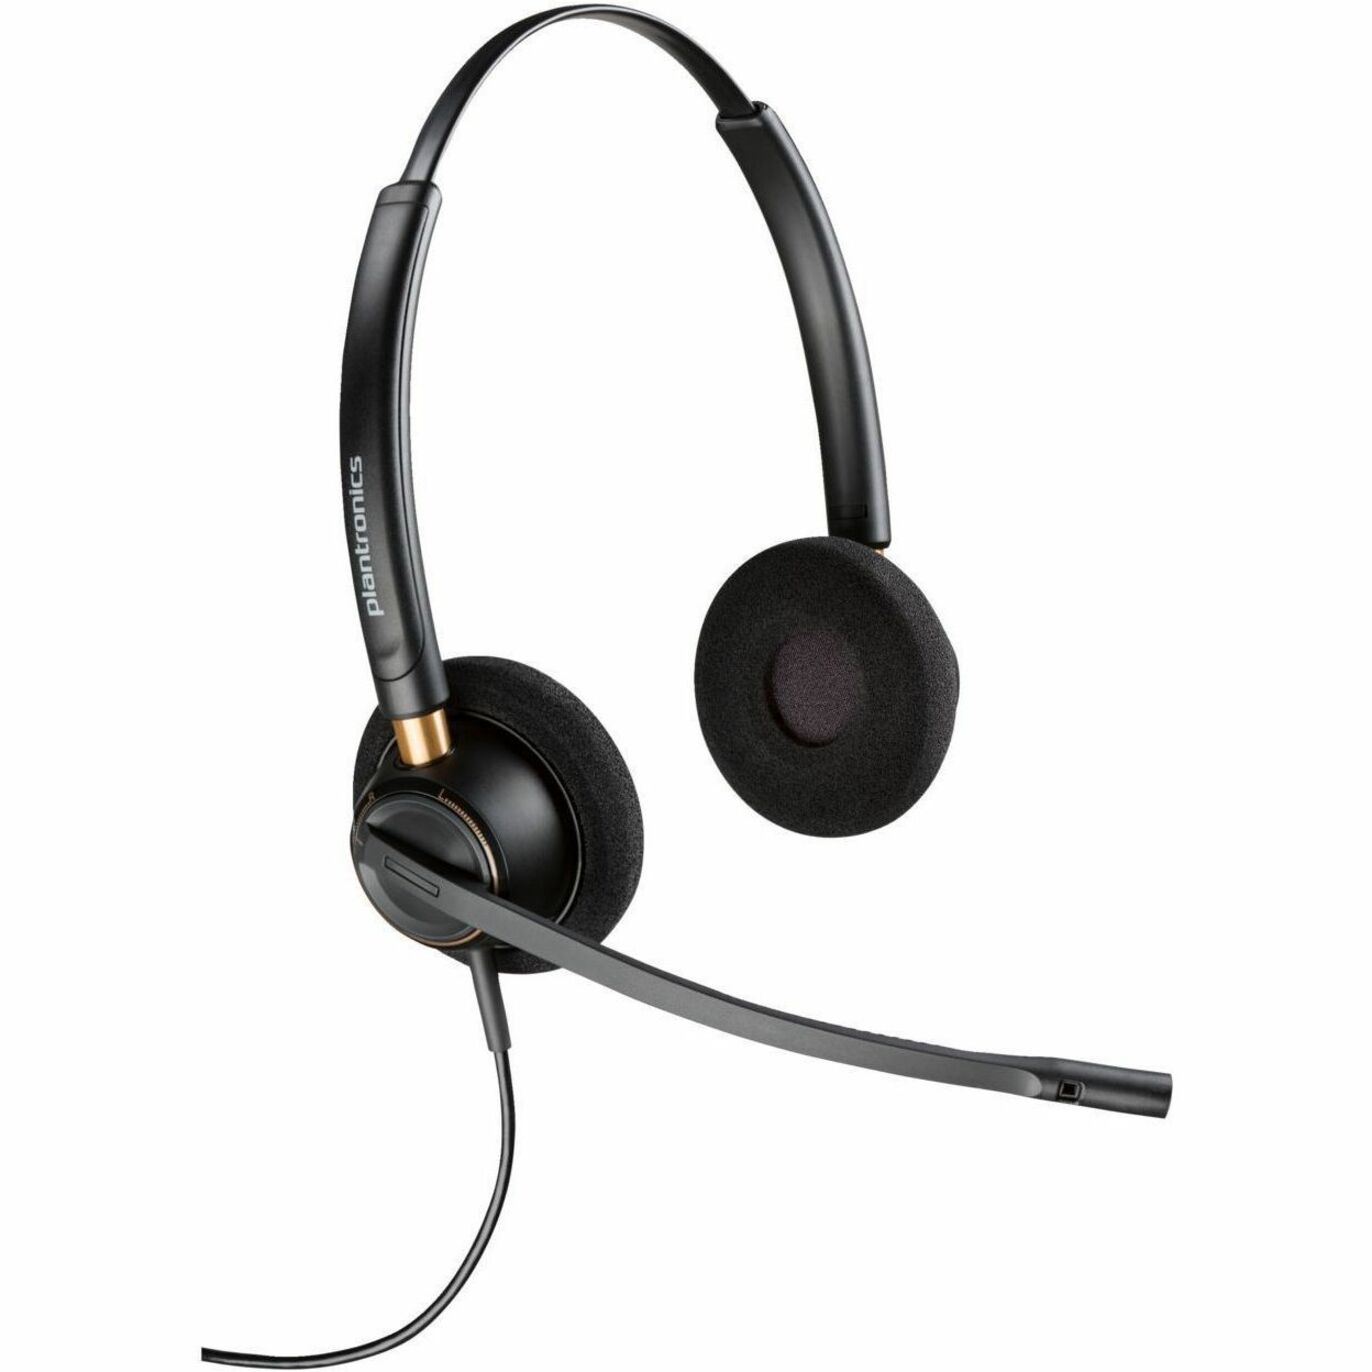 سماعة بولي إنكوربرو 520 ثنائية الأذن تي أي أي، مانعة للضوضاء، متوافقة مع أجهزة الكمبيوتر (بي سي / ماك)